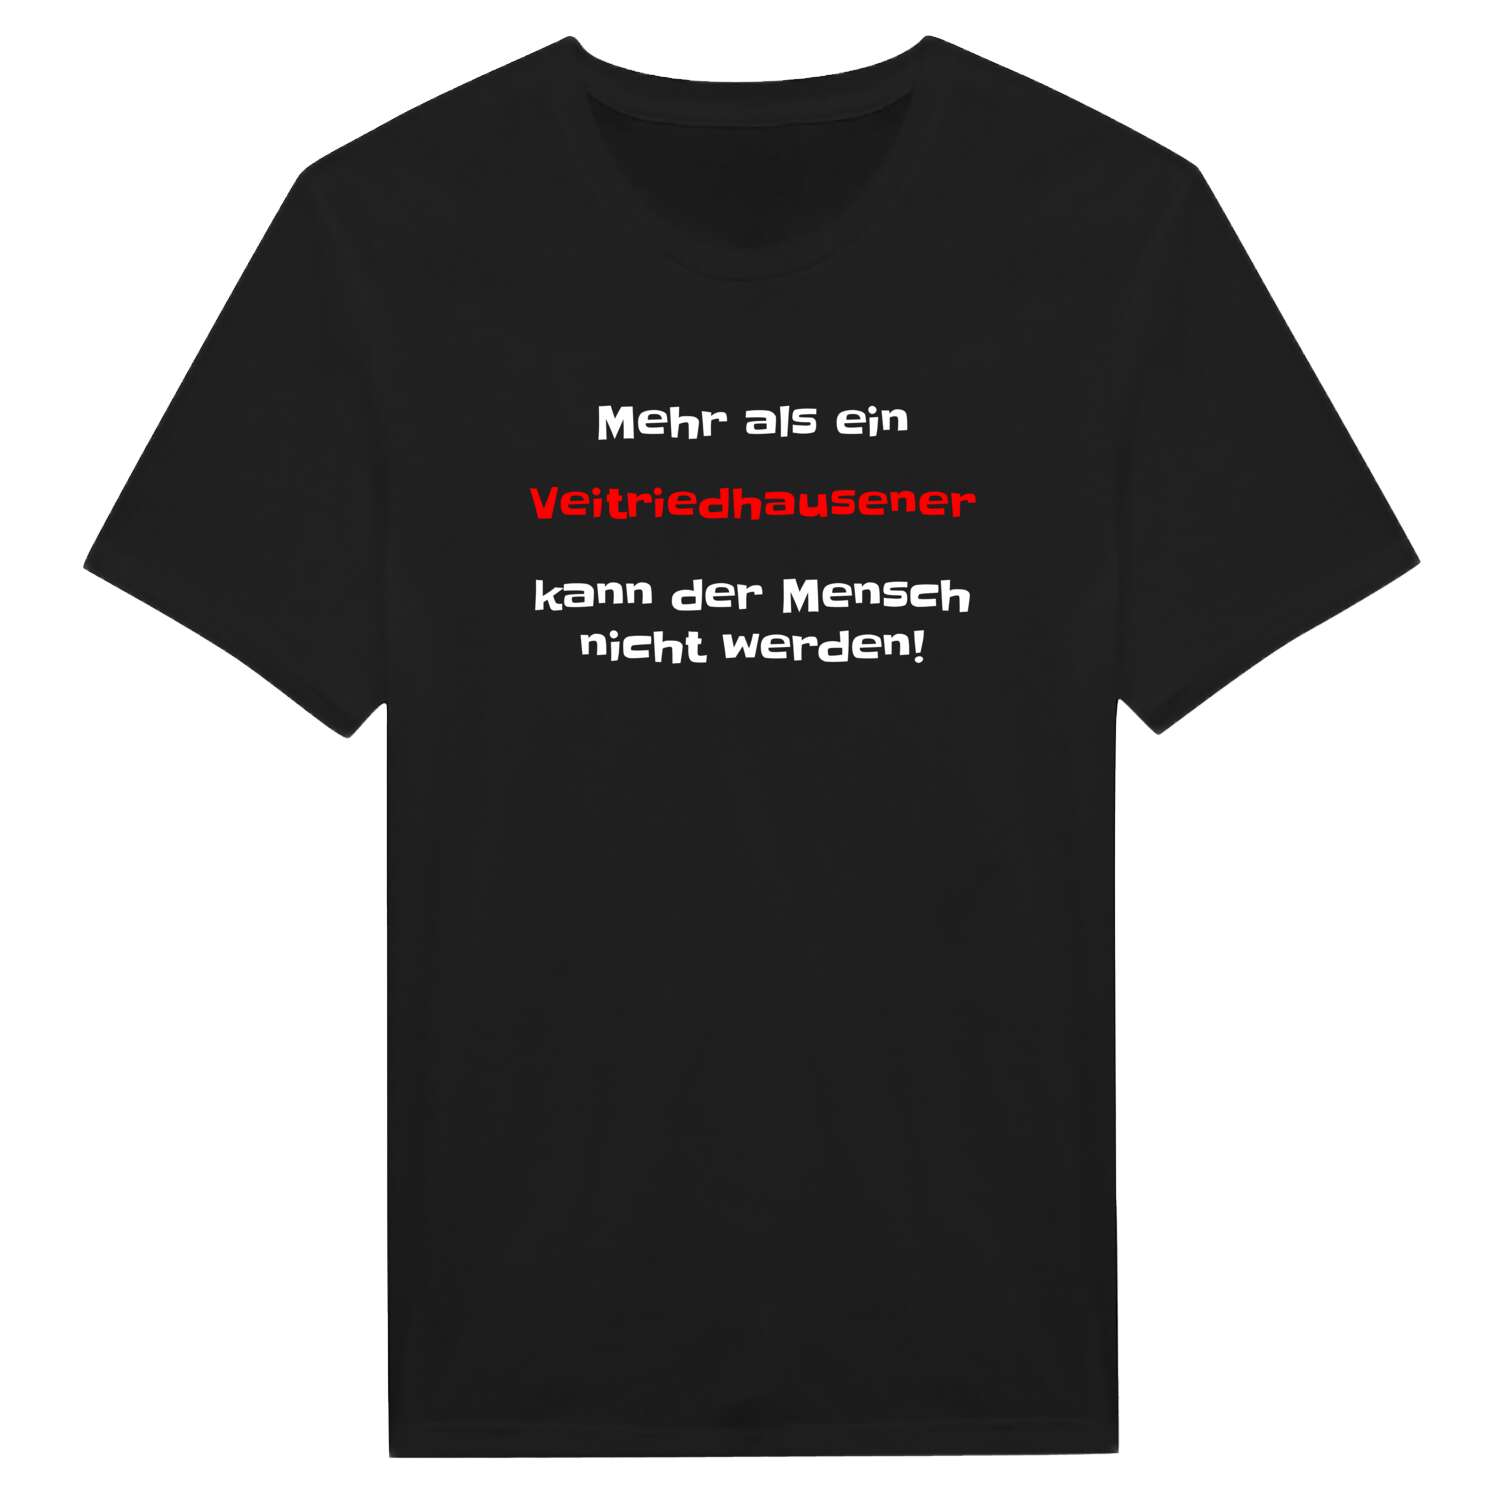 Veitriedhausen T-Shirt »Mehr als ein«